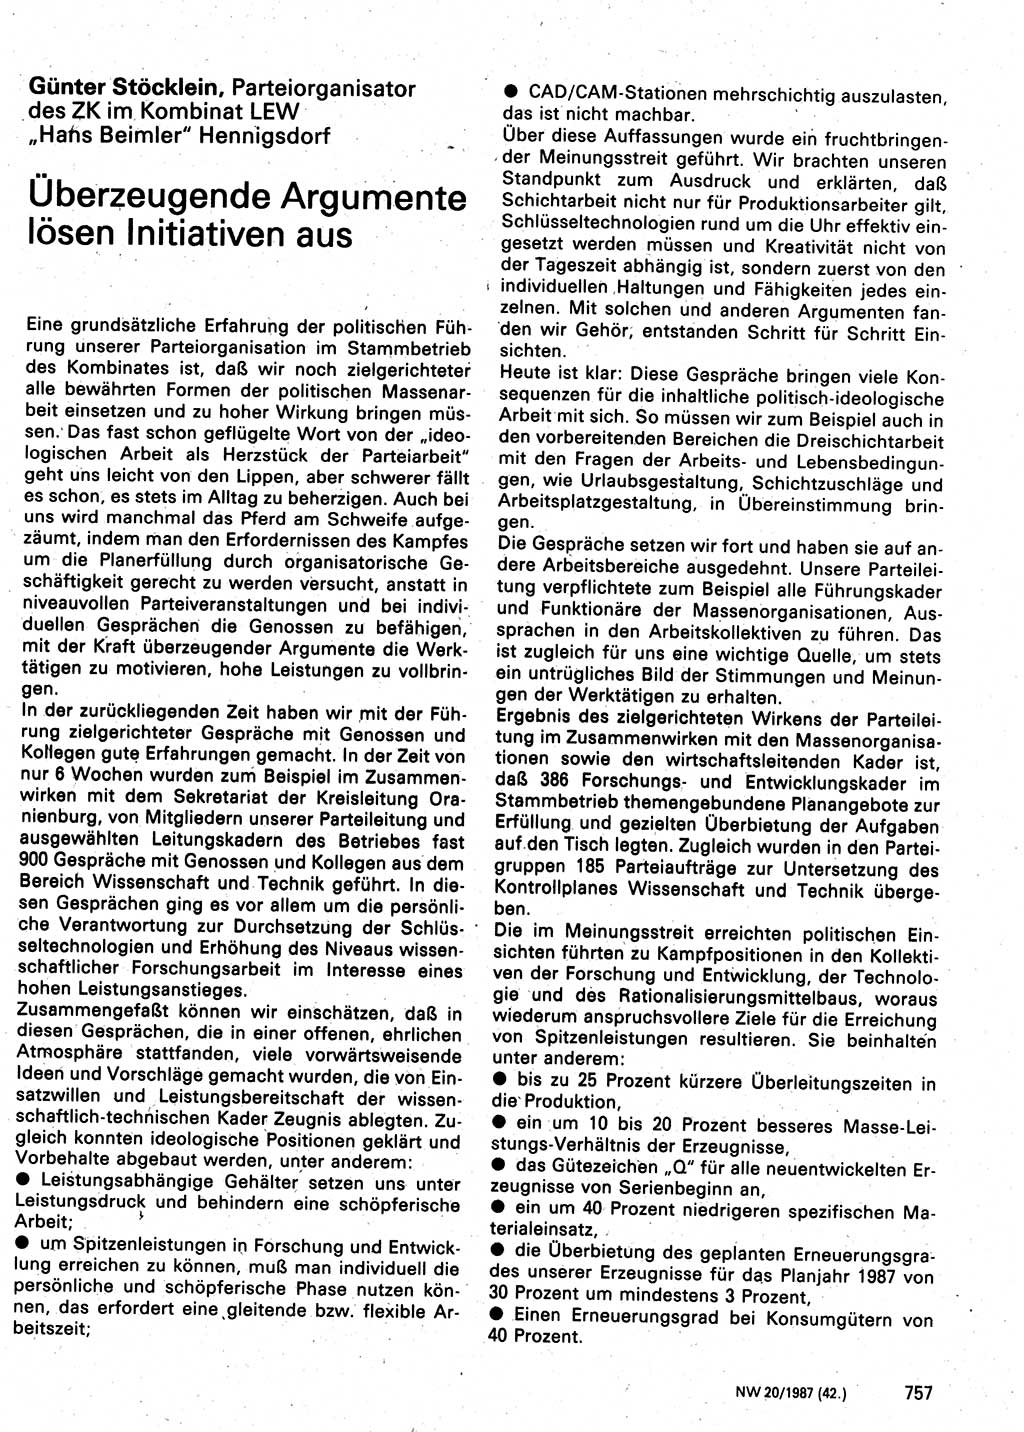 Neuer Weg (NW), Organ des Zentralkomitees (ZK) der SED (Sozialistische Einheitspartei Deutschlands) für Fragen des Parteilebens, 42. Jahrgang [Deutsche Demokratische Republik (DDR)] 1987, Seite 757 (NW ZK SED DDR 1987, S. 757)